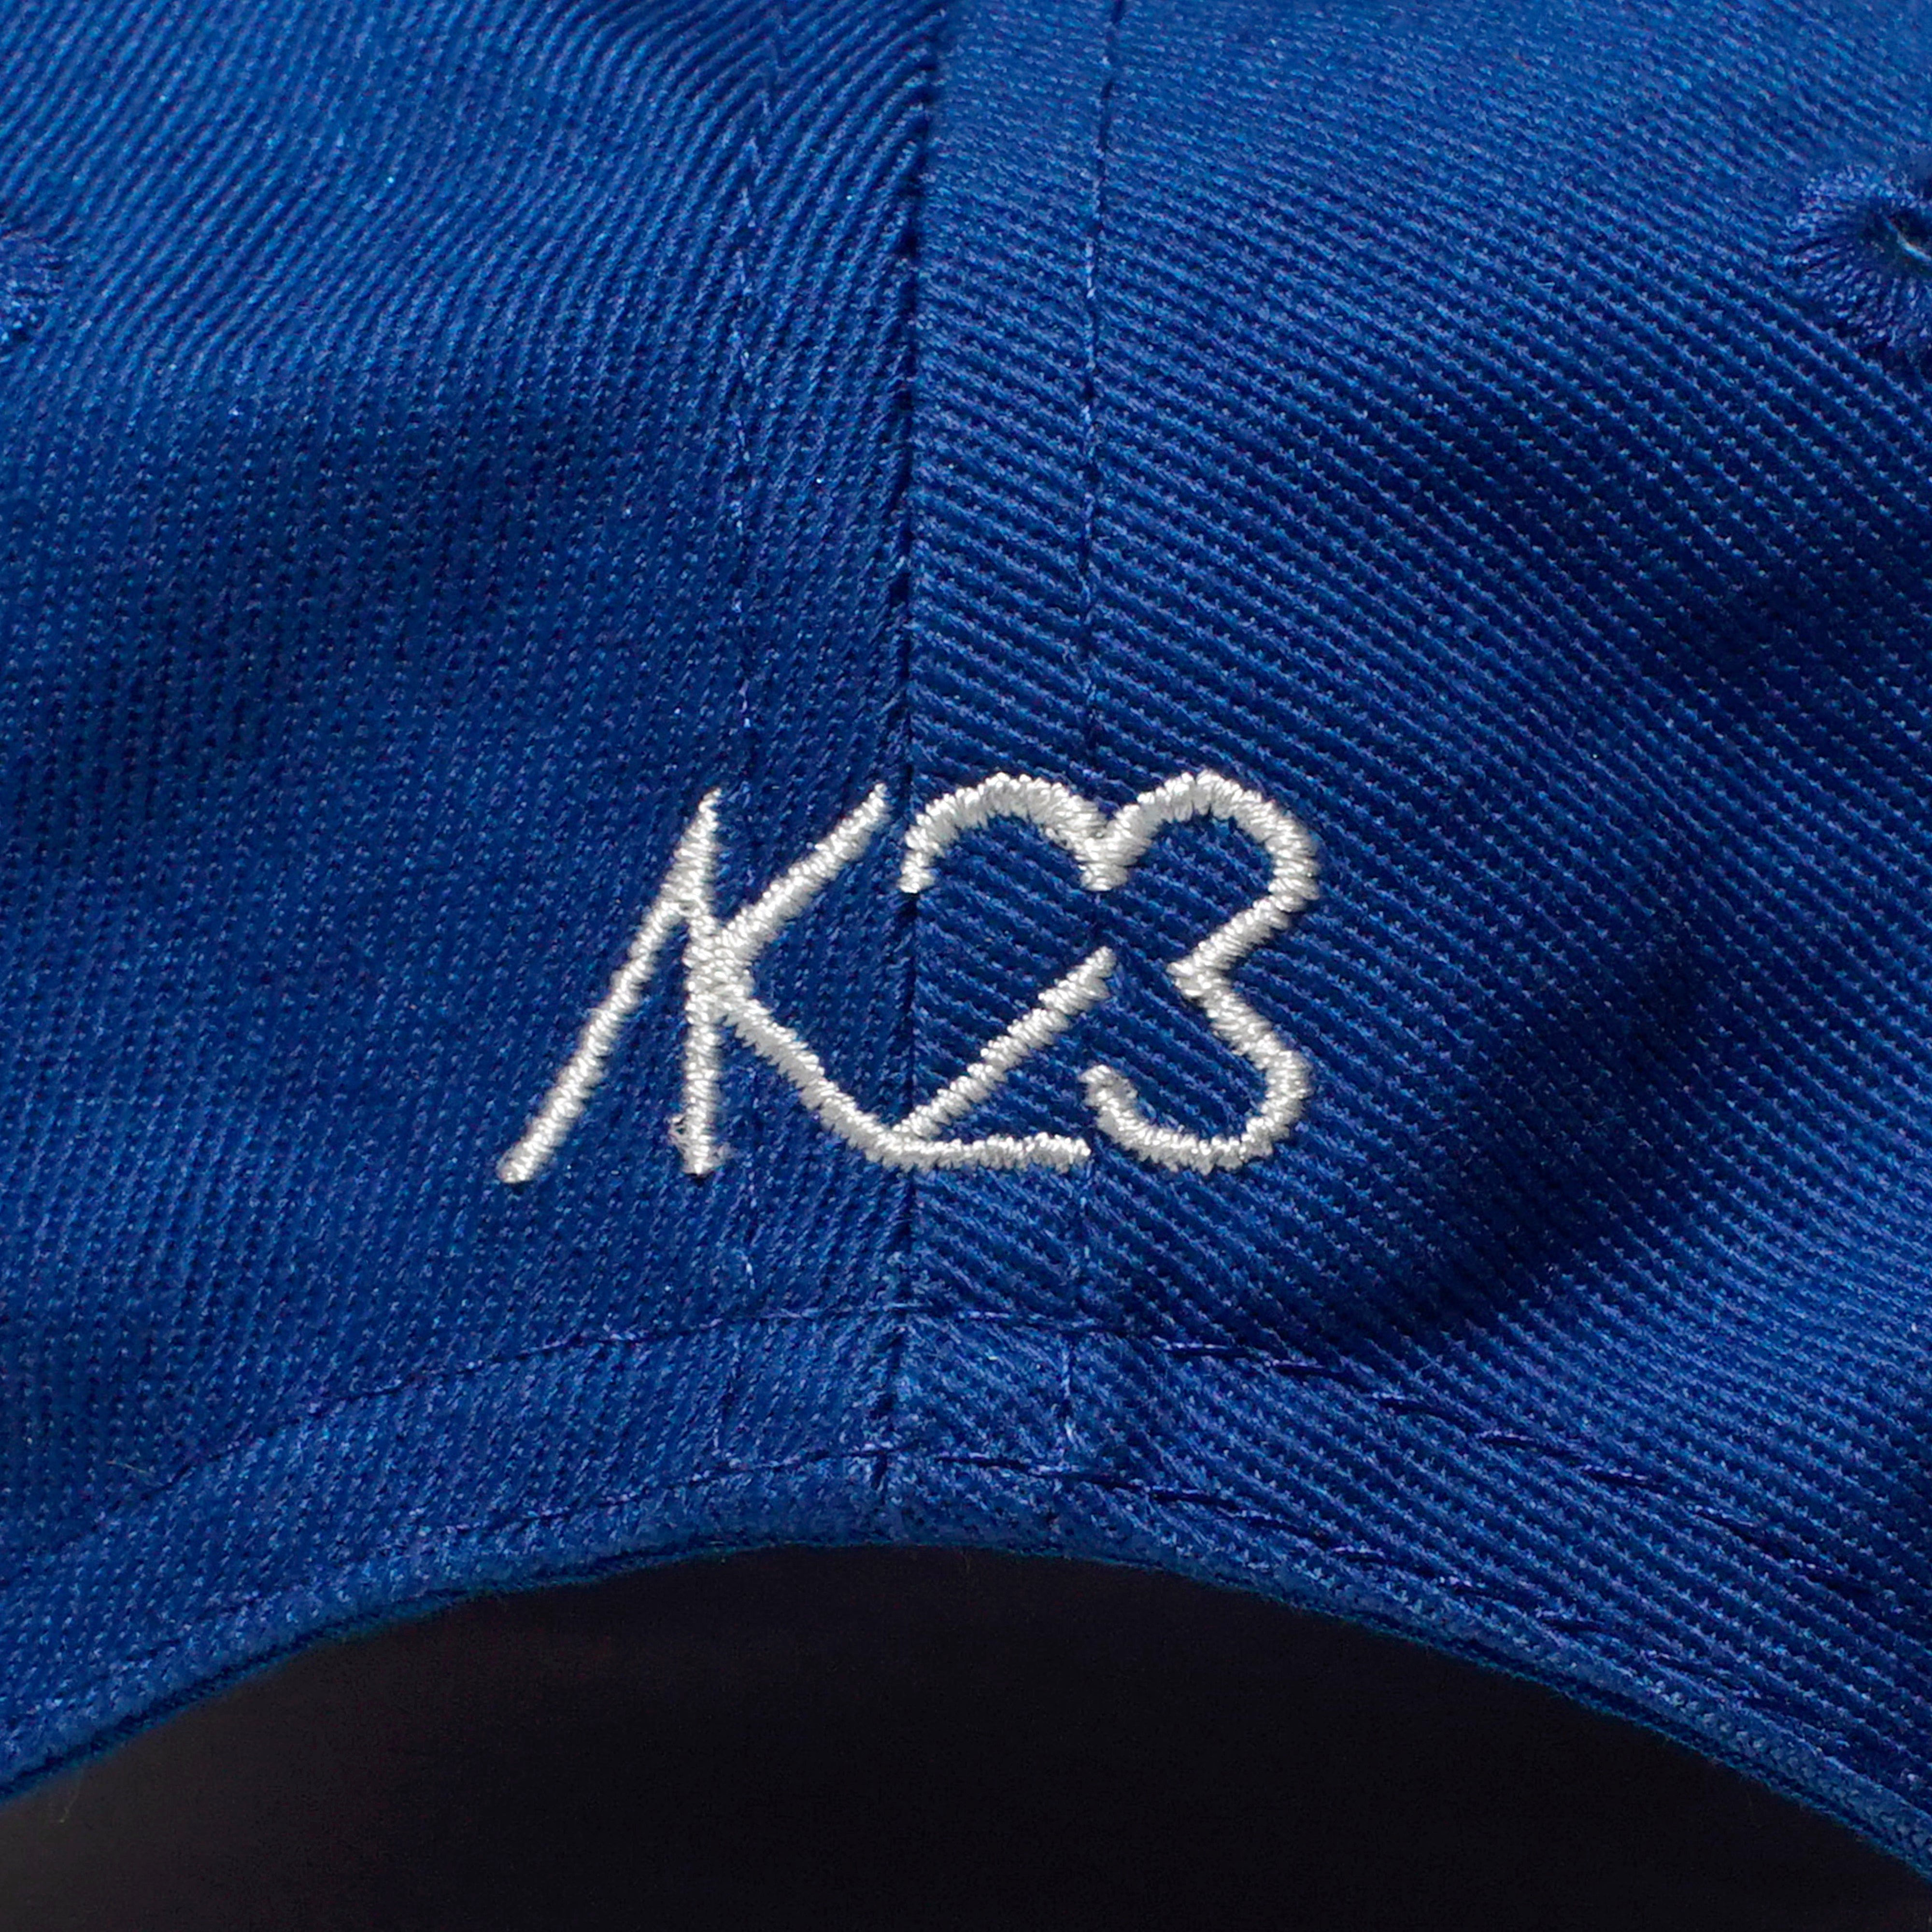 AK23 CAP (BLUE)